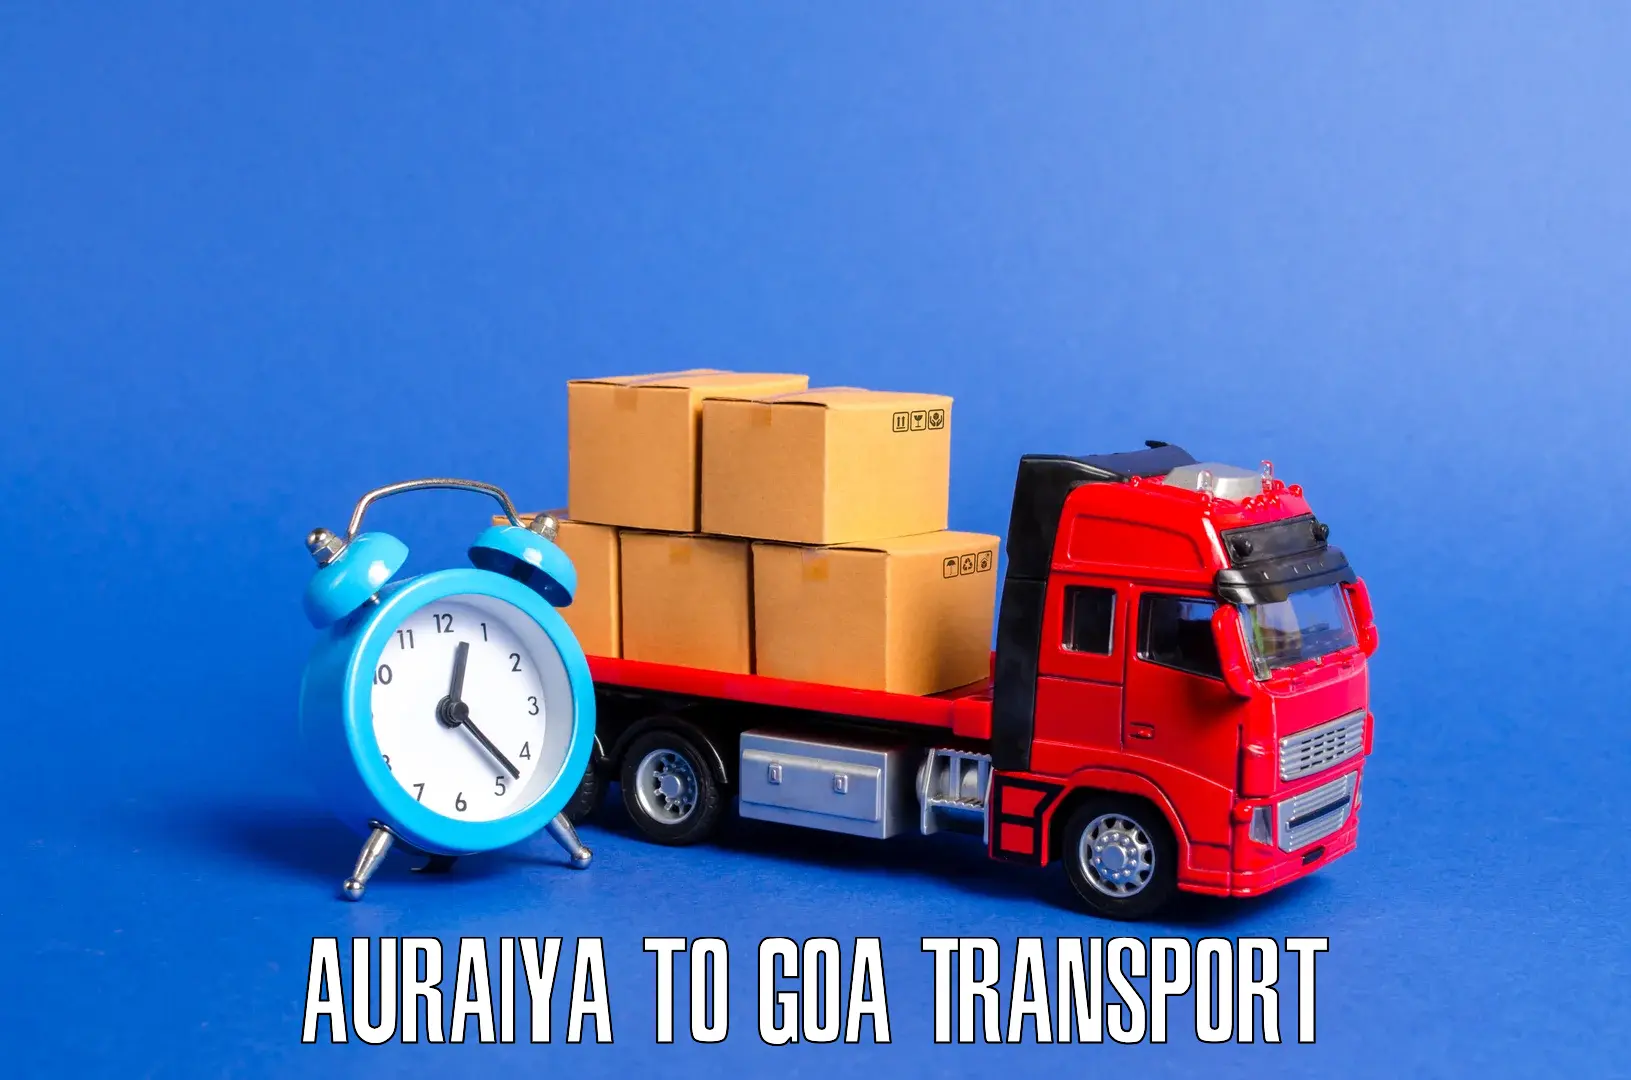 Interstate transport services Auraiya to Ponda